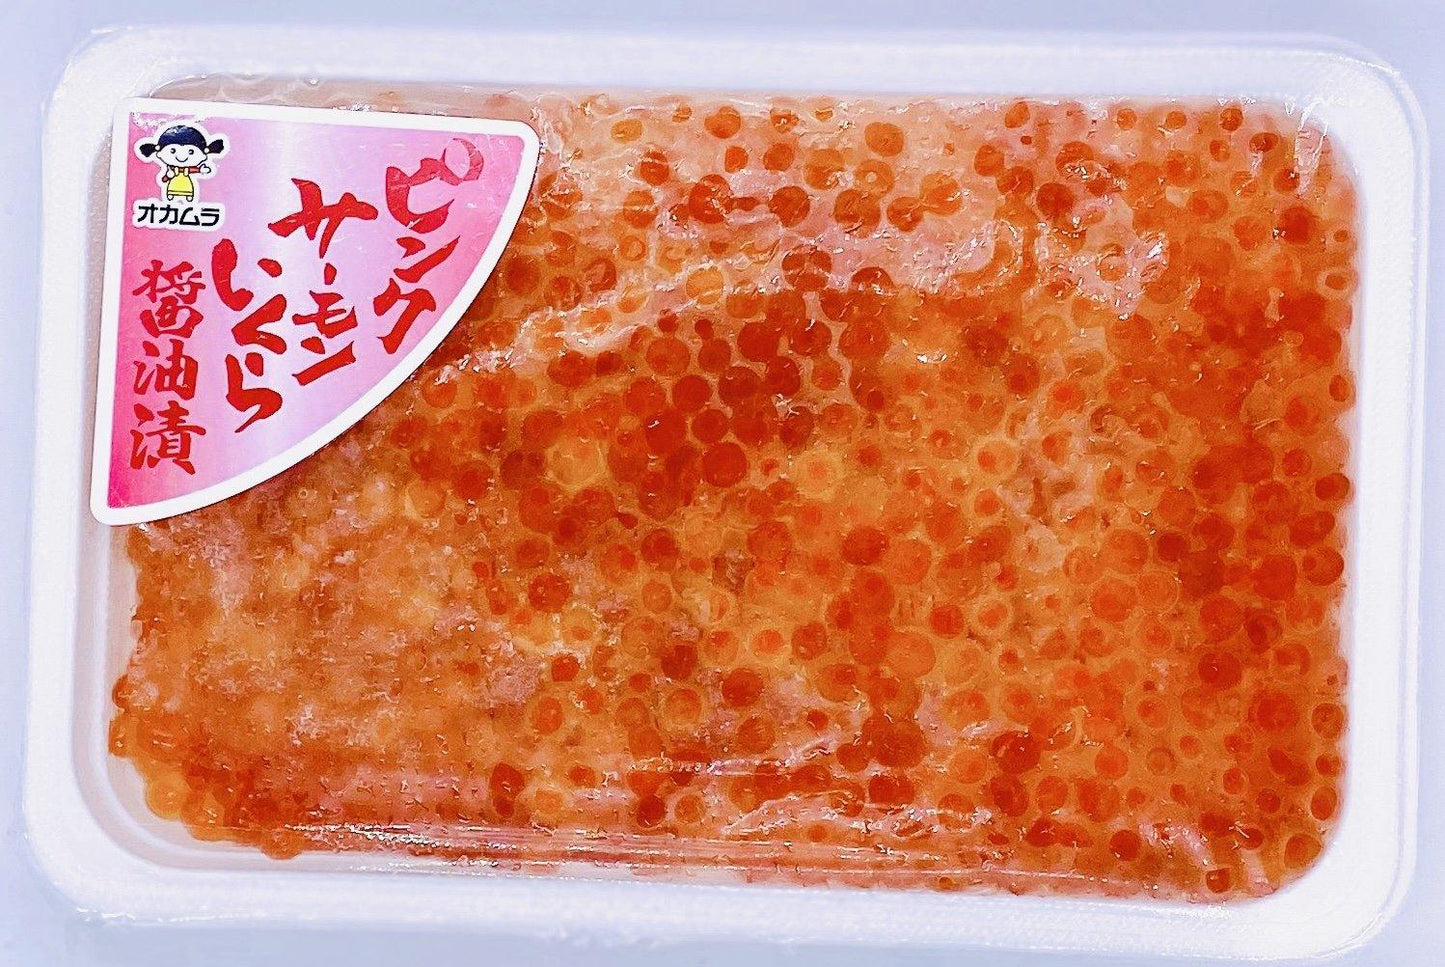 
                  
                    Marinated Salmon Caviar (Ikura) | 味付けいくら (中粒) | 250G - SAKANA Singapore
                  
                